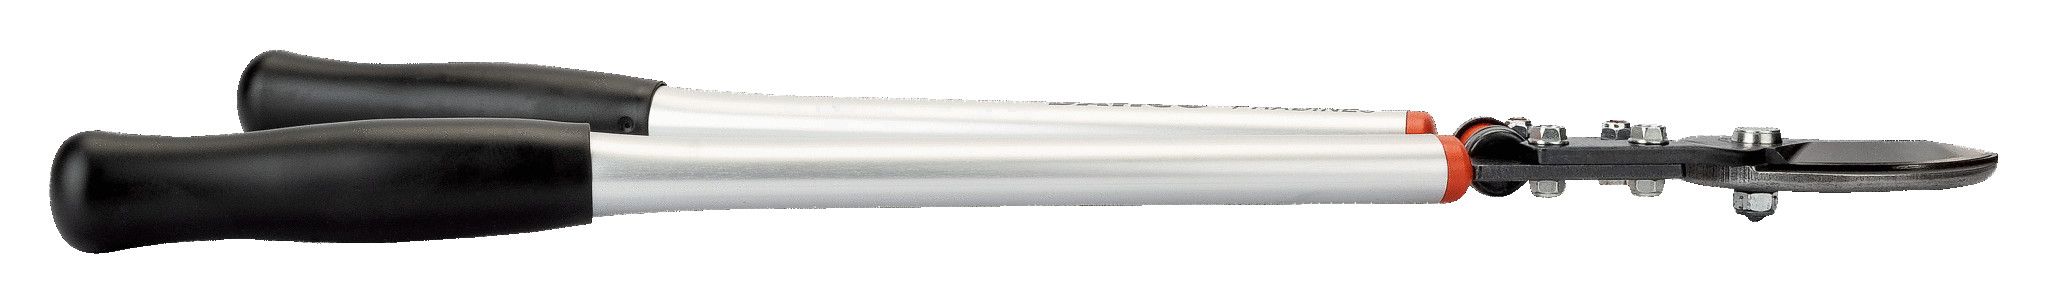 Tagliarami in alluminio a lama passante lunghezza cm 90 BAHCO P160-SL-90